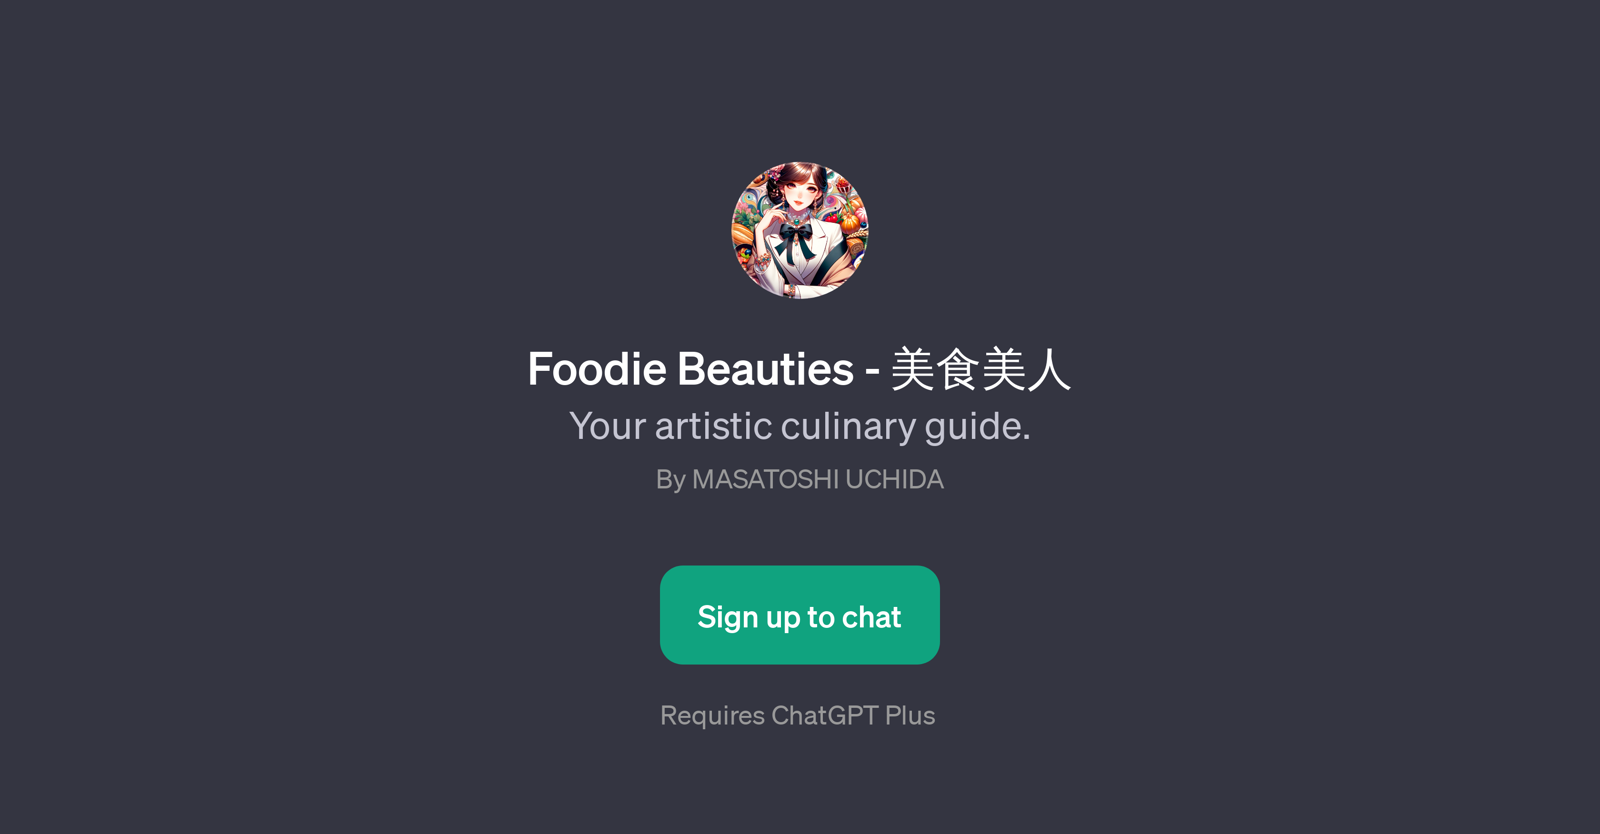 Foodie Beauties - website